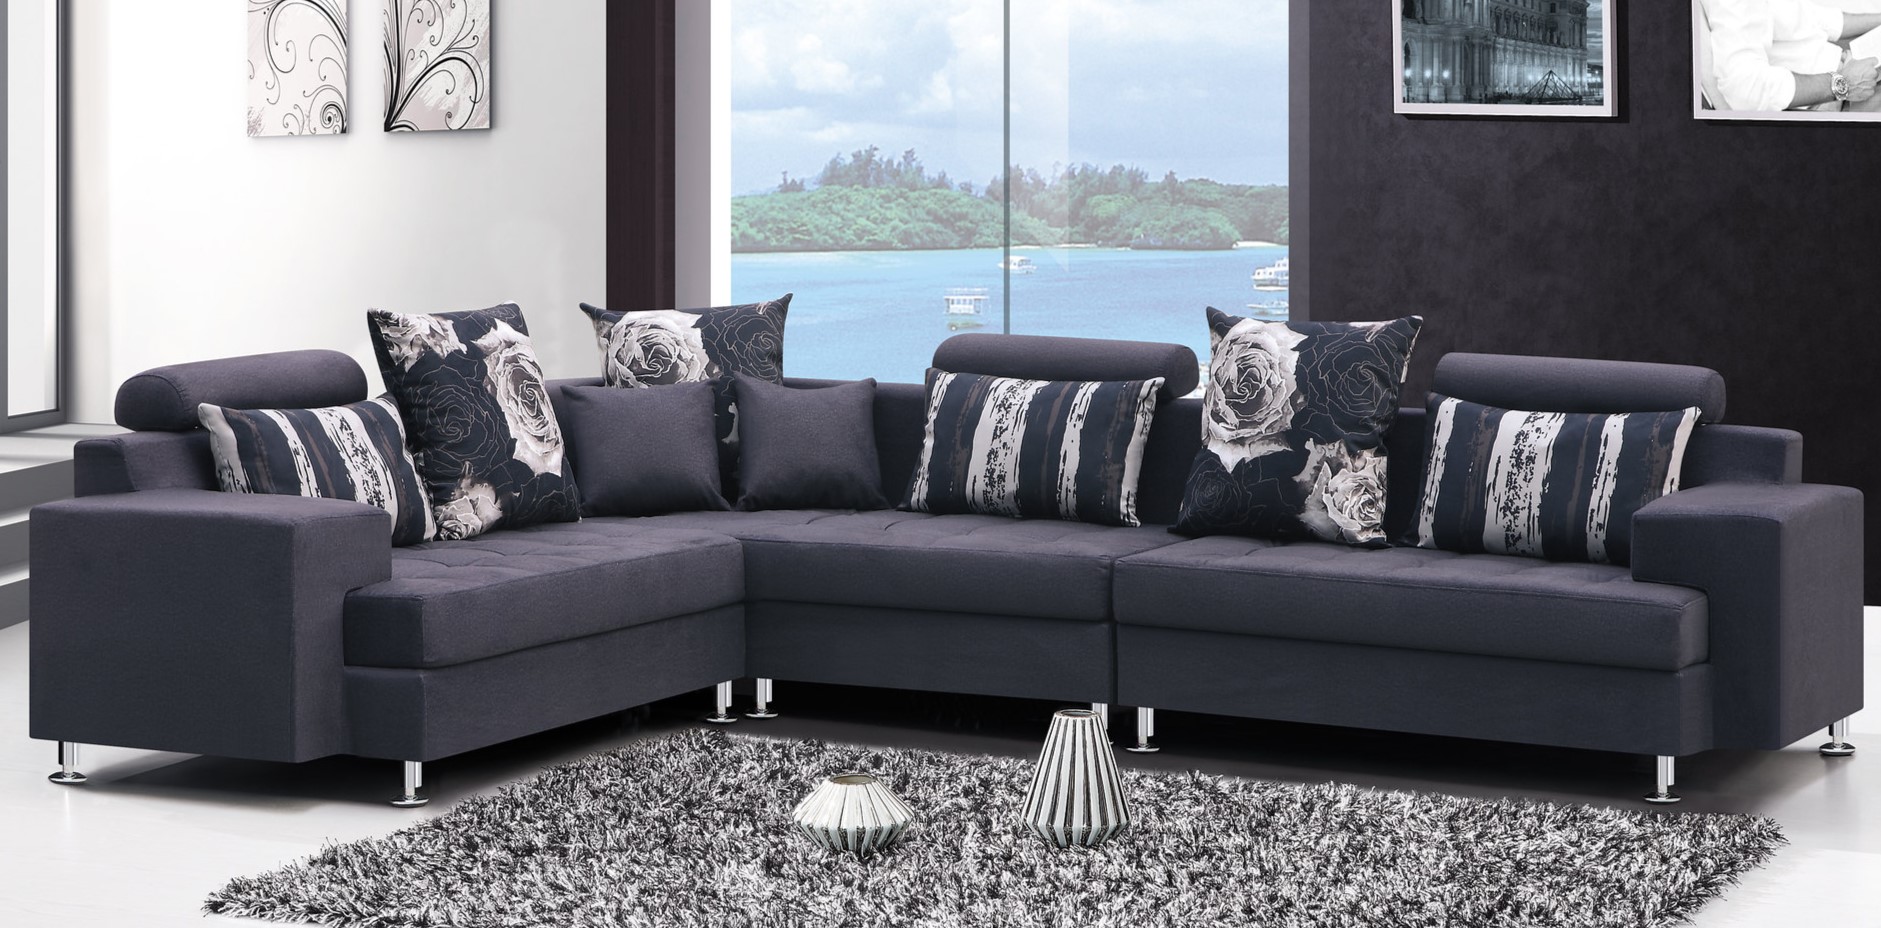 Темно-синий угловой диван с металлическими ножками можно использовать в современном интерьере